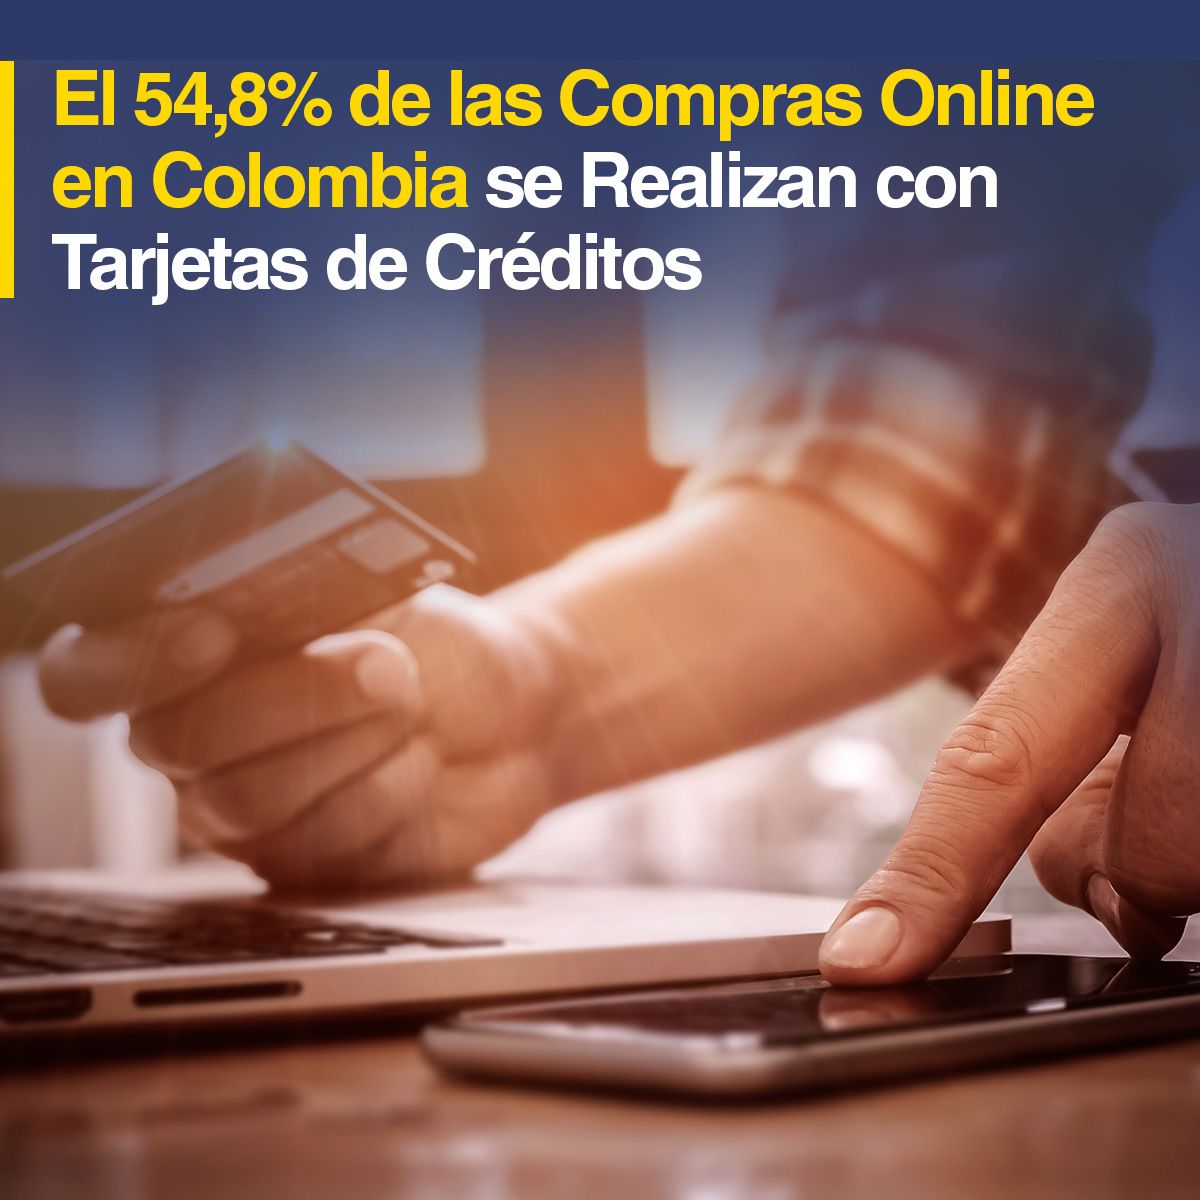 El 54,8% de las Compras Online en Colombia se Realizan con Tarjetas de Créditos